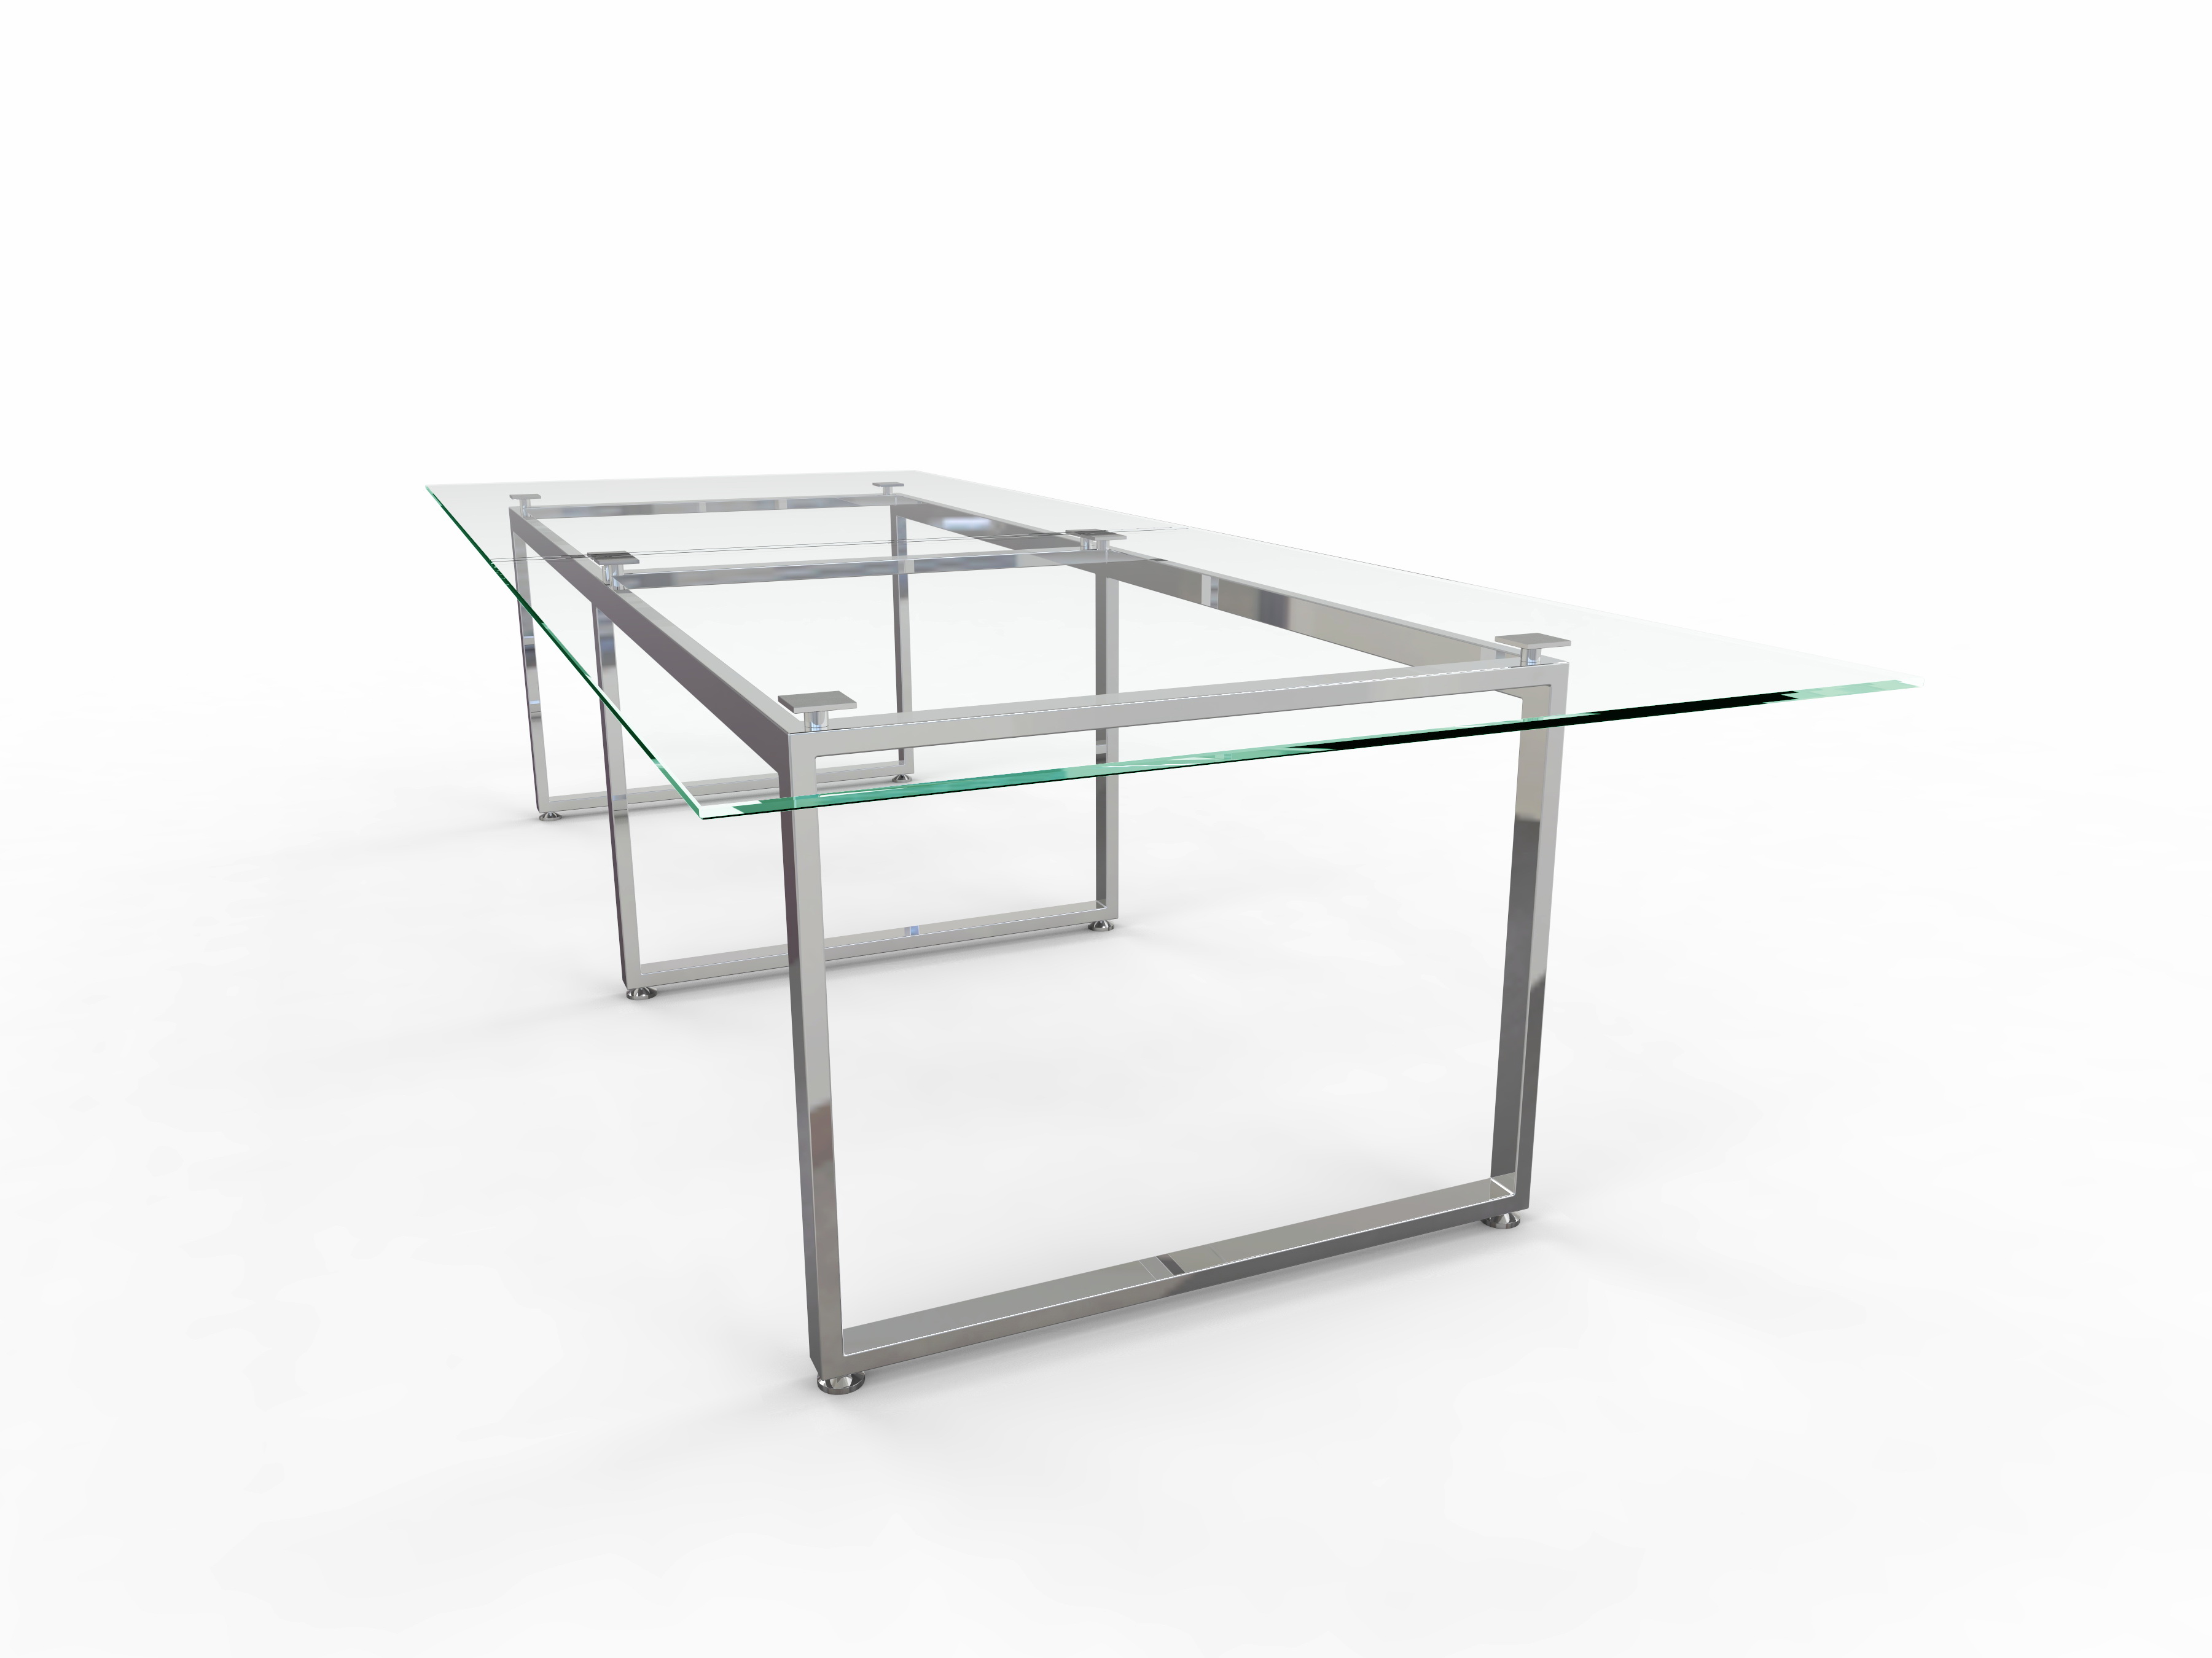 Проект стеклянного стола для перегоров